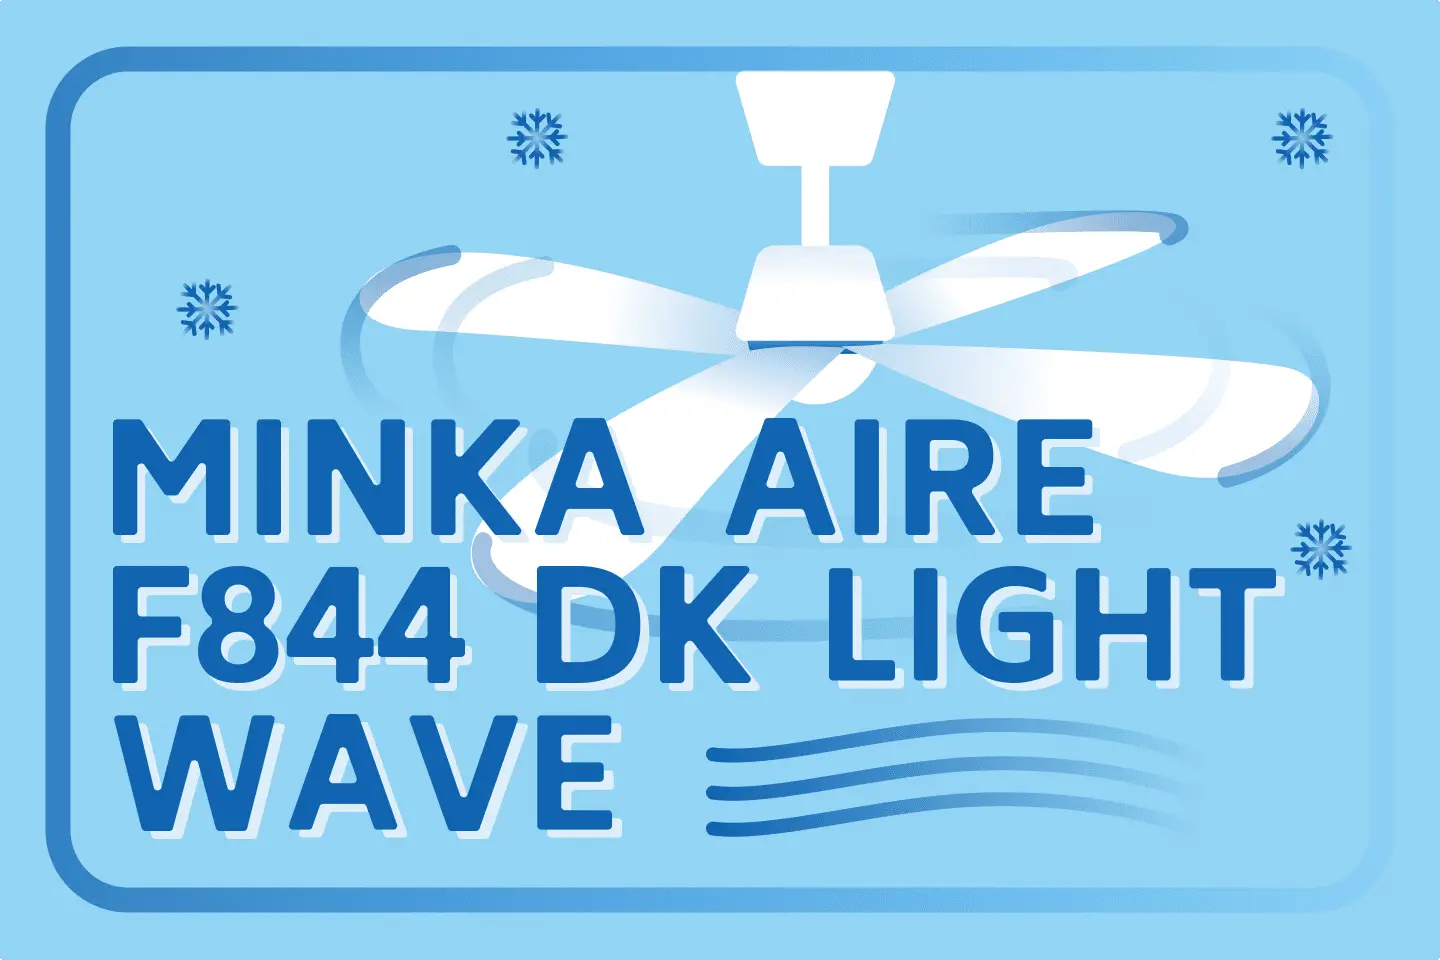 Minka-Aire F844 DK Light Wave Ceiling Fan Review